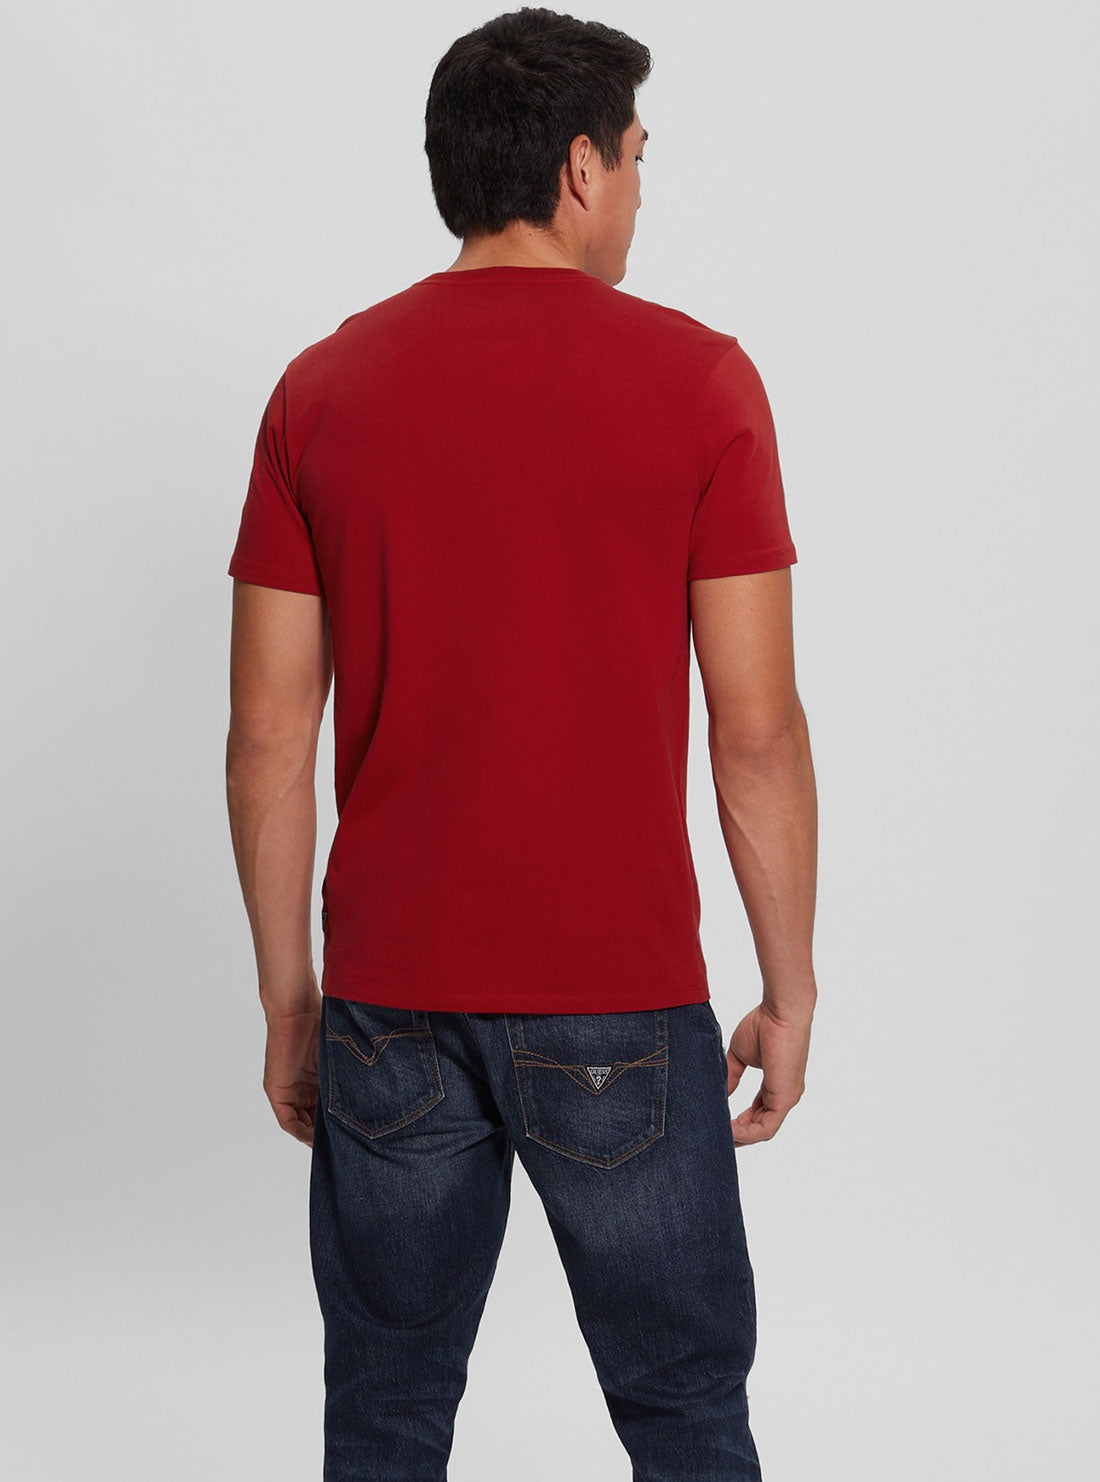 GUESS Men's Red Golden Rabbit Logo T-Shirt Back View